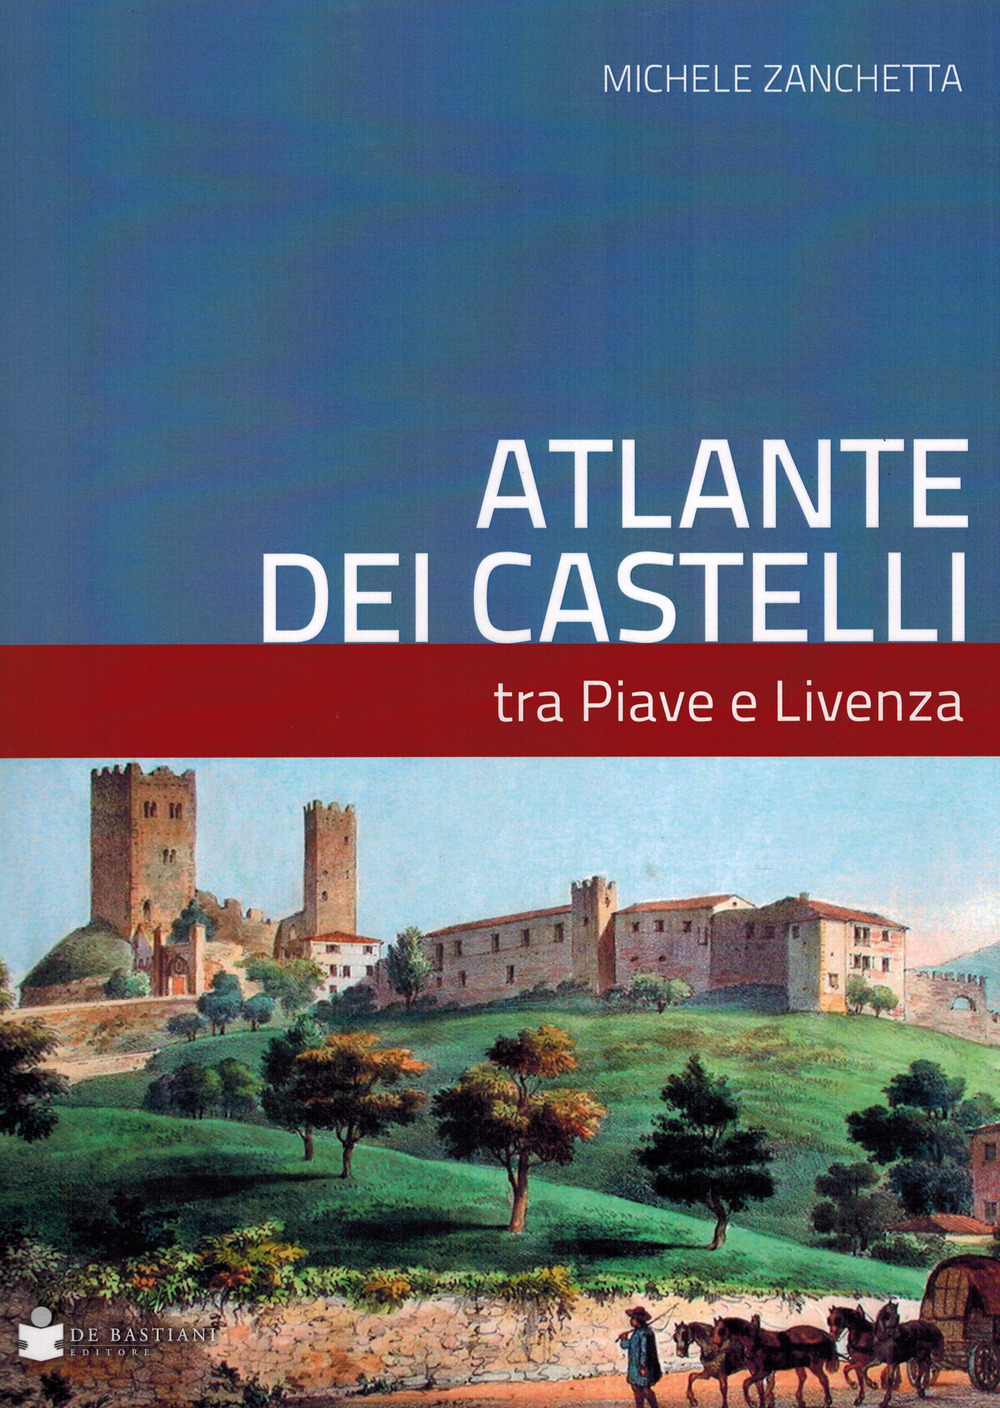 Libri Michele Zanchetta - Atlante Dei Castelli Tra Piave E Livenza NUOVO SIGILLATO, EDIZIONE DEL 23/06/2021 SUBITO DISPONIBILE